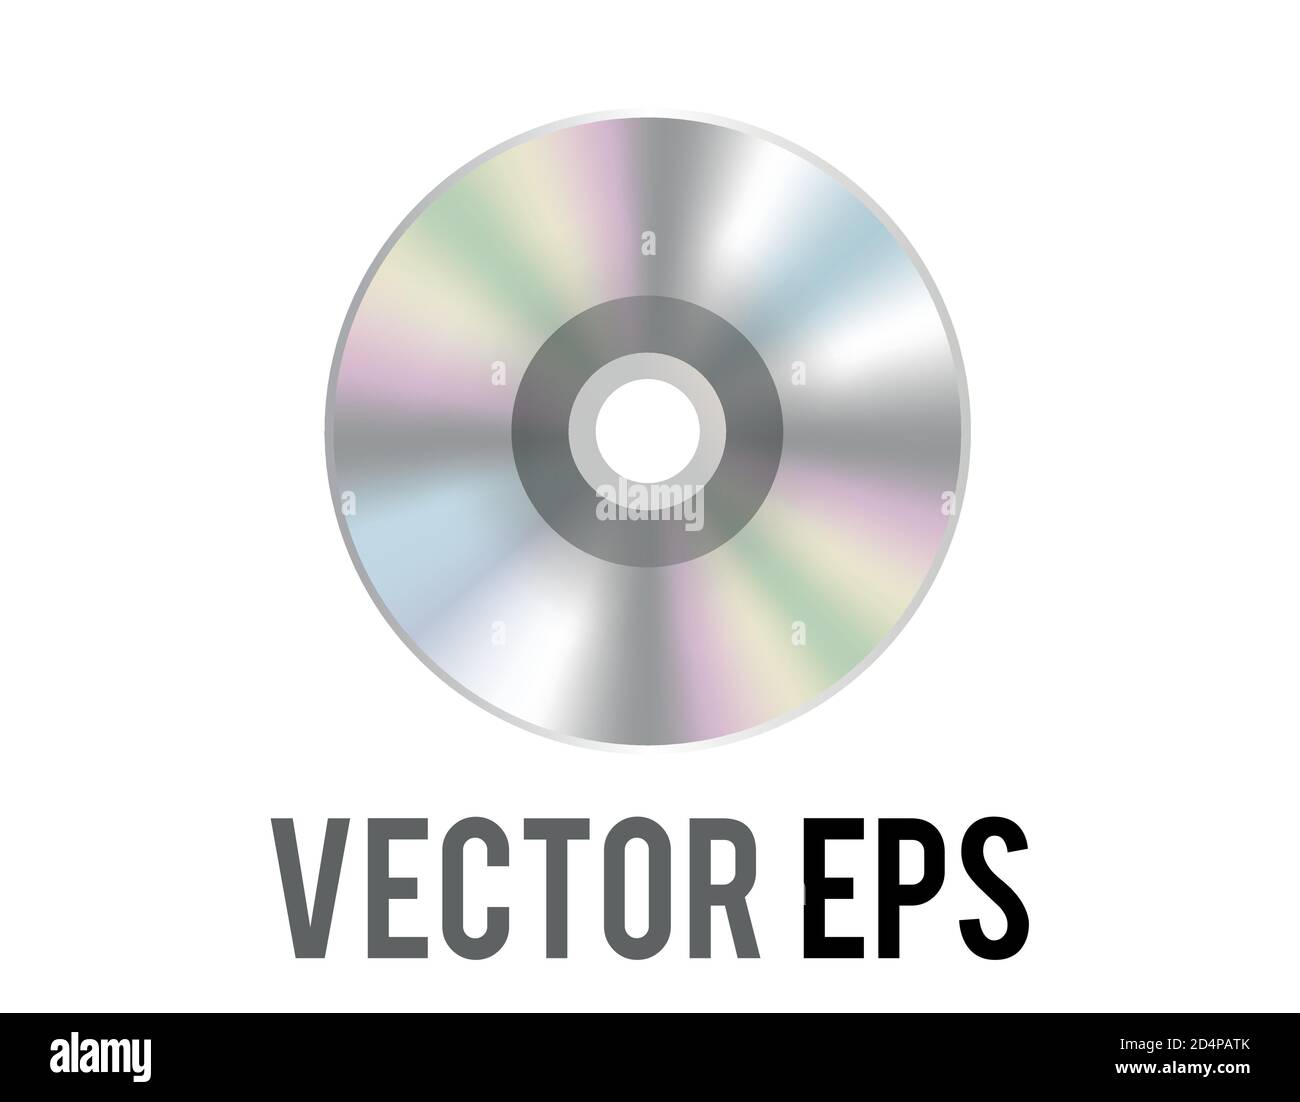 Icona del disco ottico vettoriale in argento isolato, utilizzata per rappresentare CD, DVD e film, contenuti musicali e album correlati Illustrazione Vettoriale